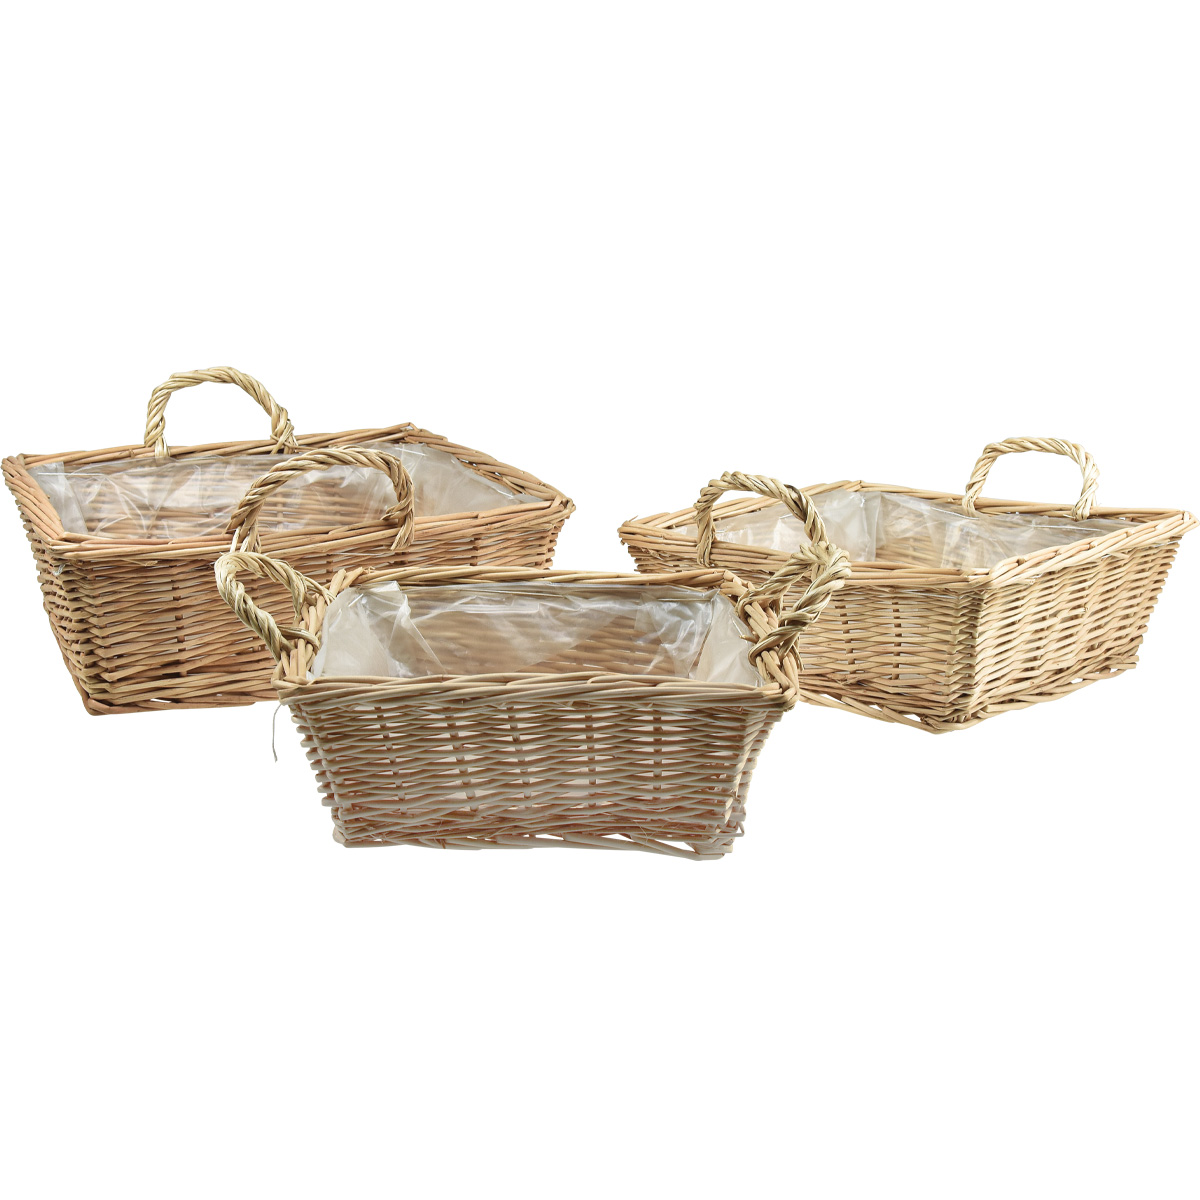 5 hermosas y prácticas cestas de picnic de mimbre.